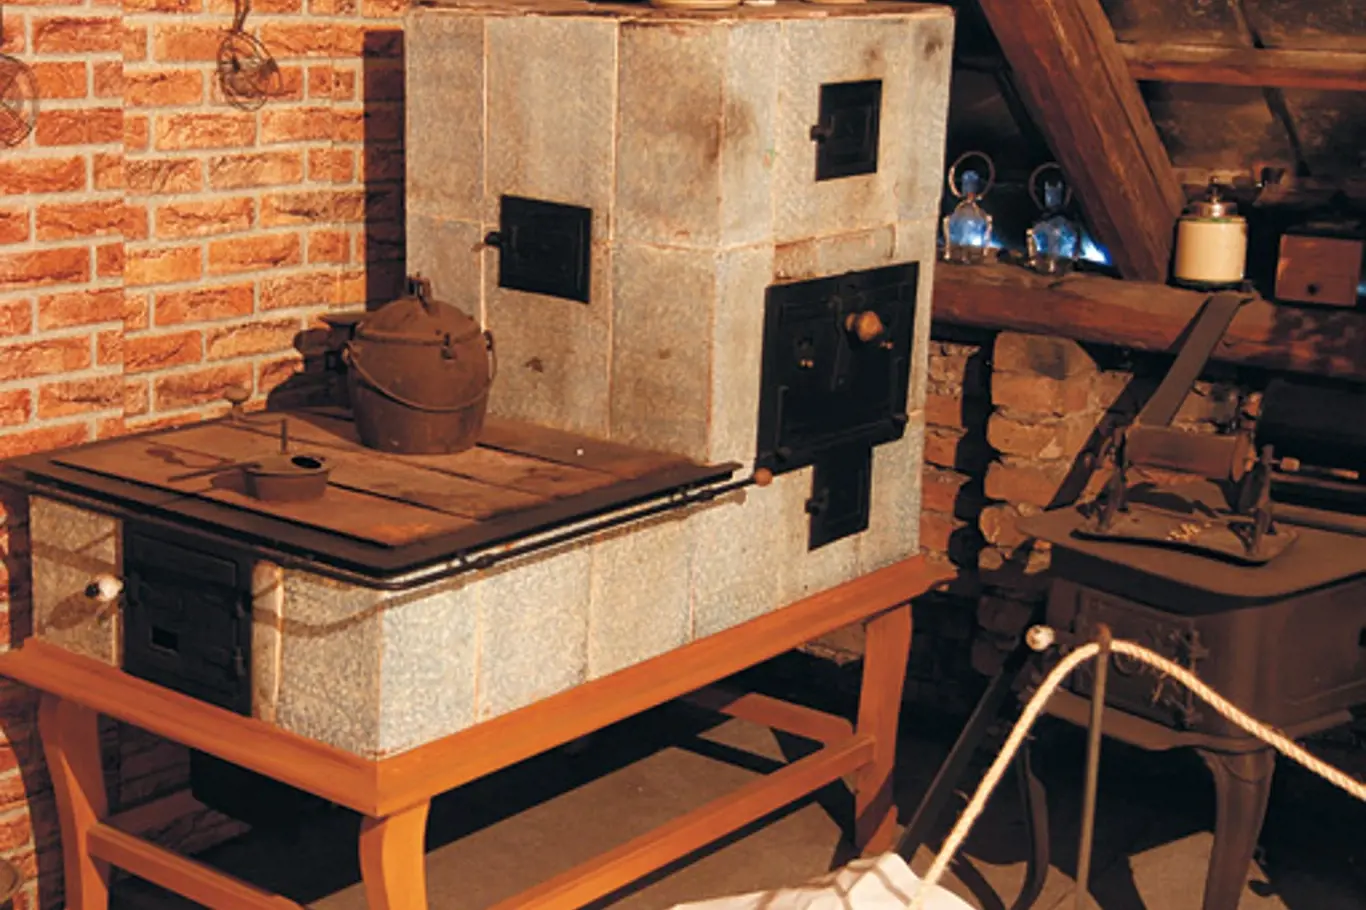 kachlový stolek patří k nejstarším exponátům